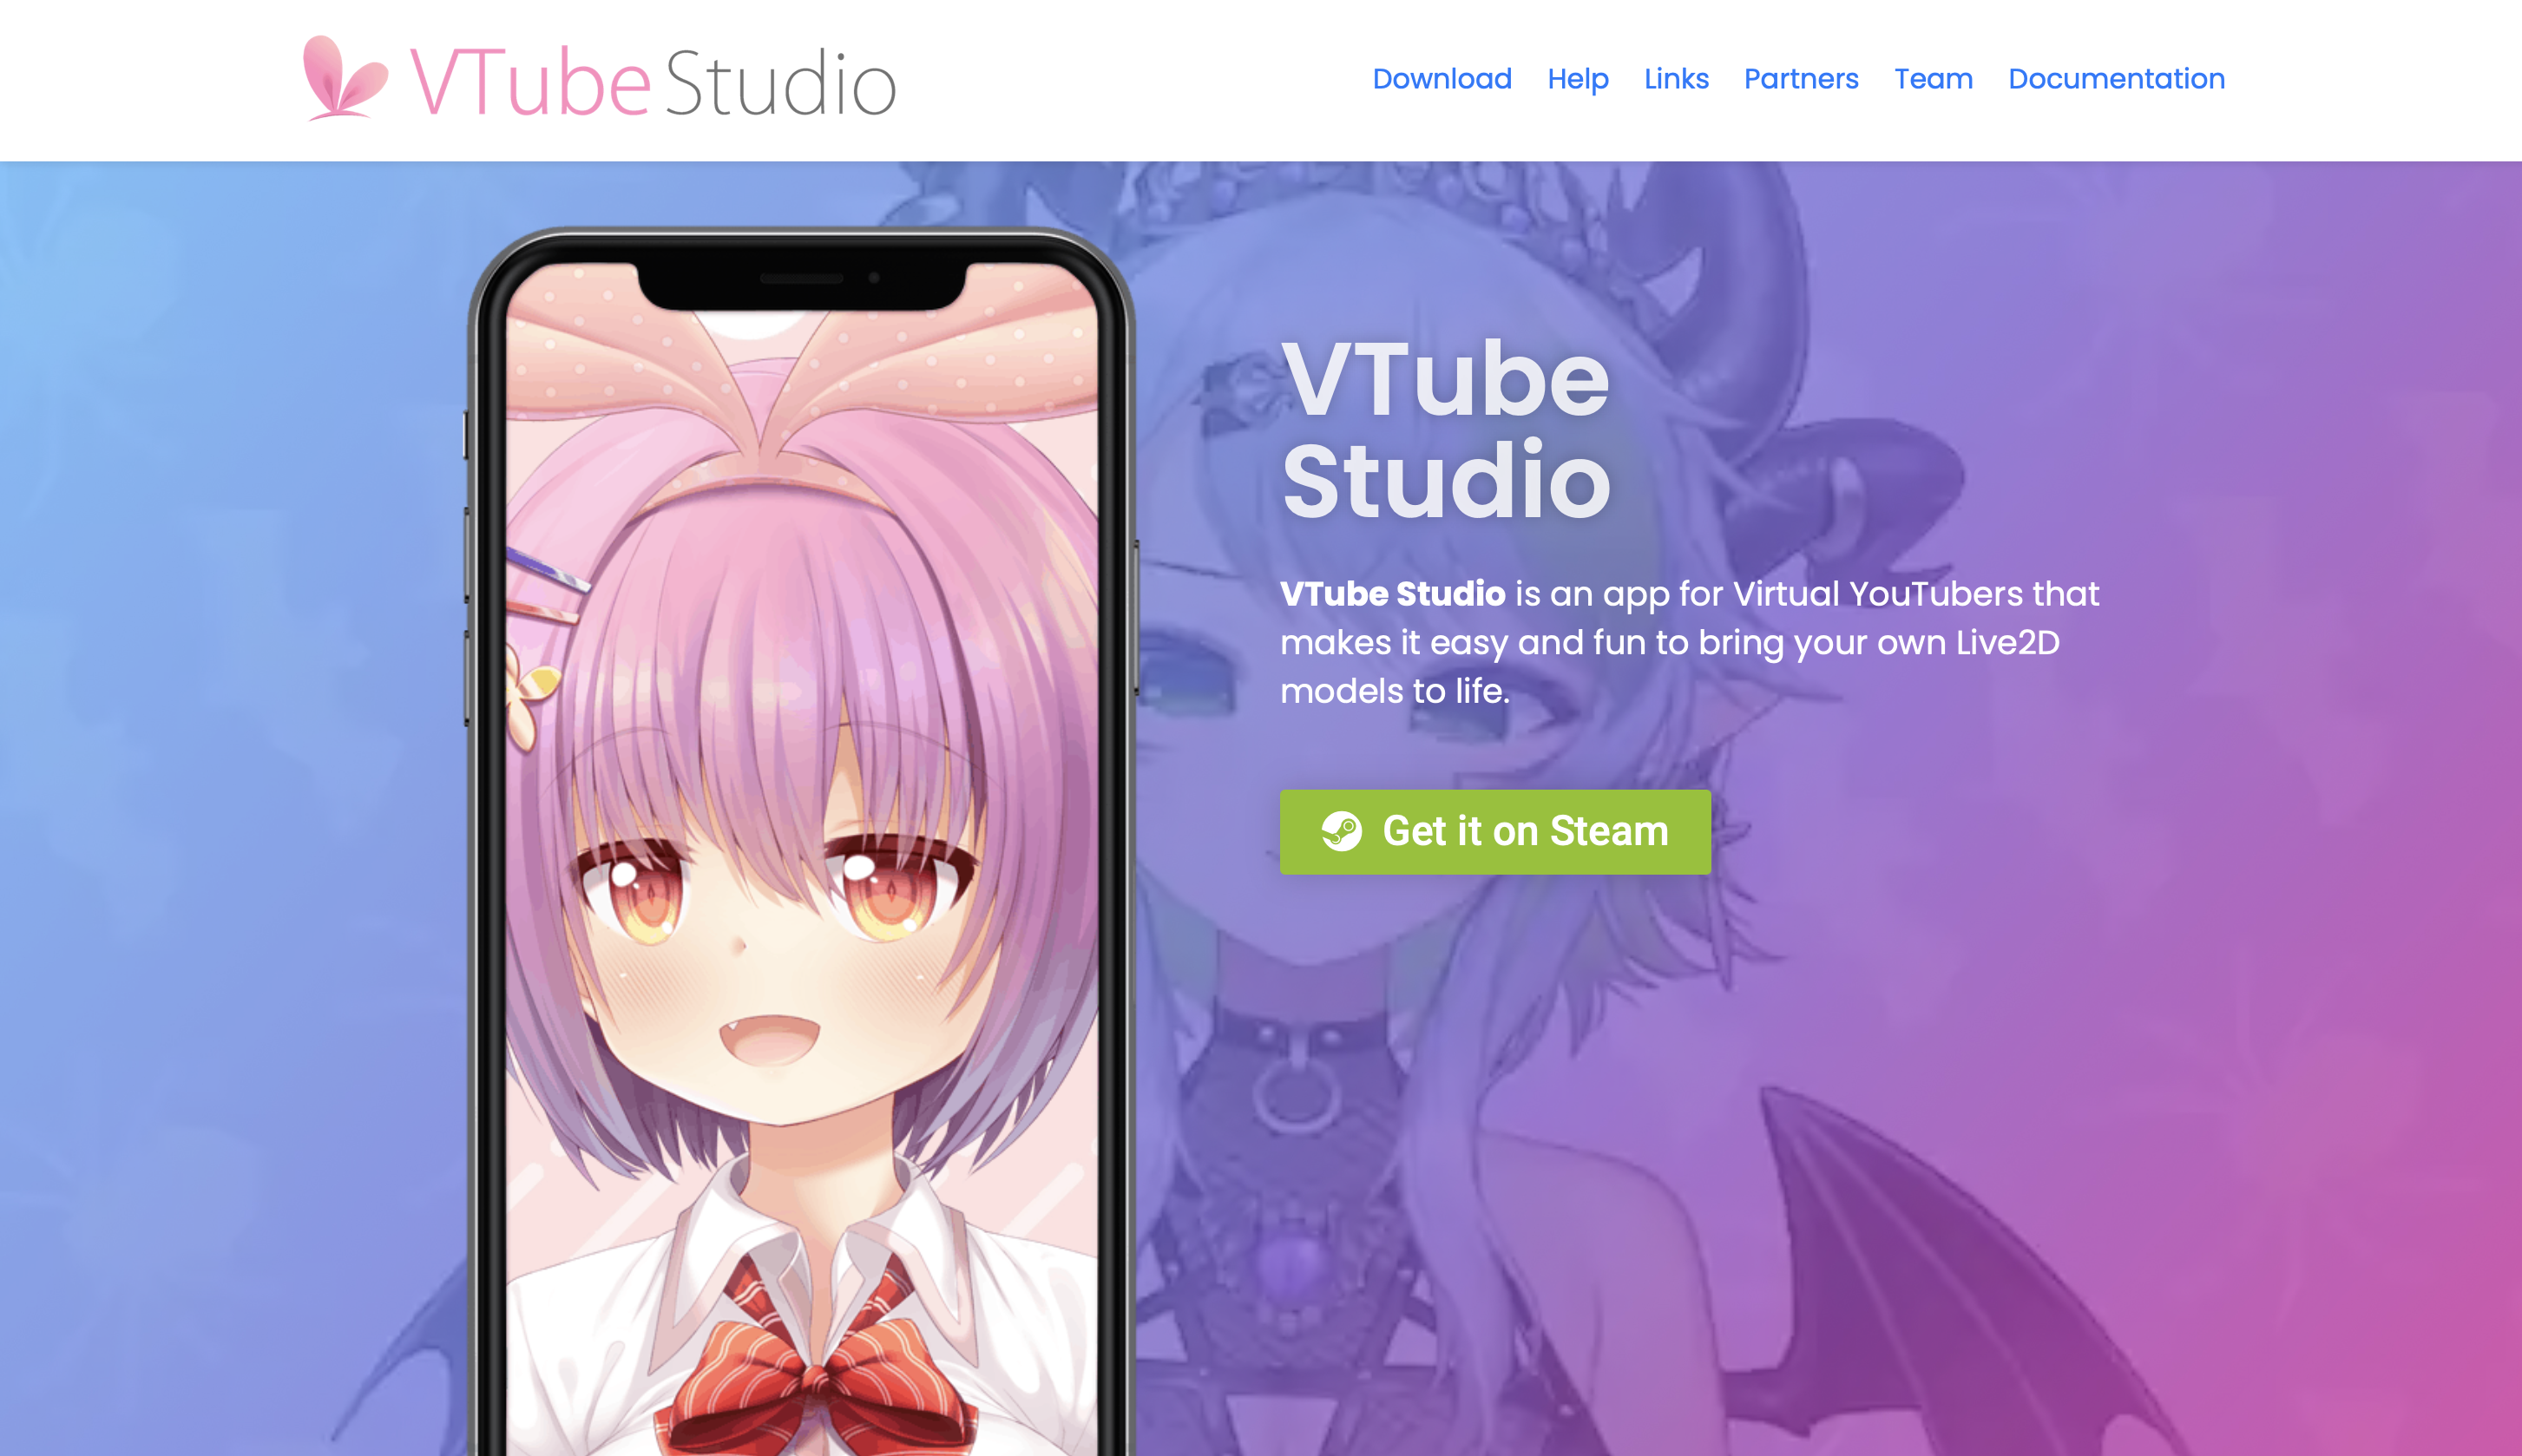 VTube Studio